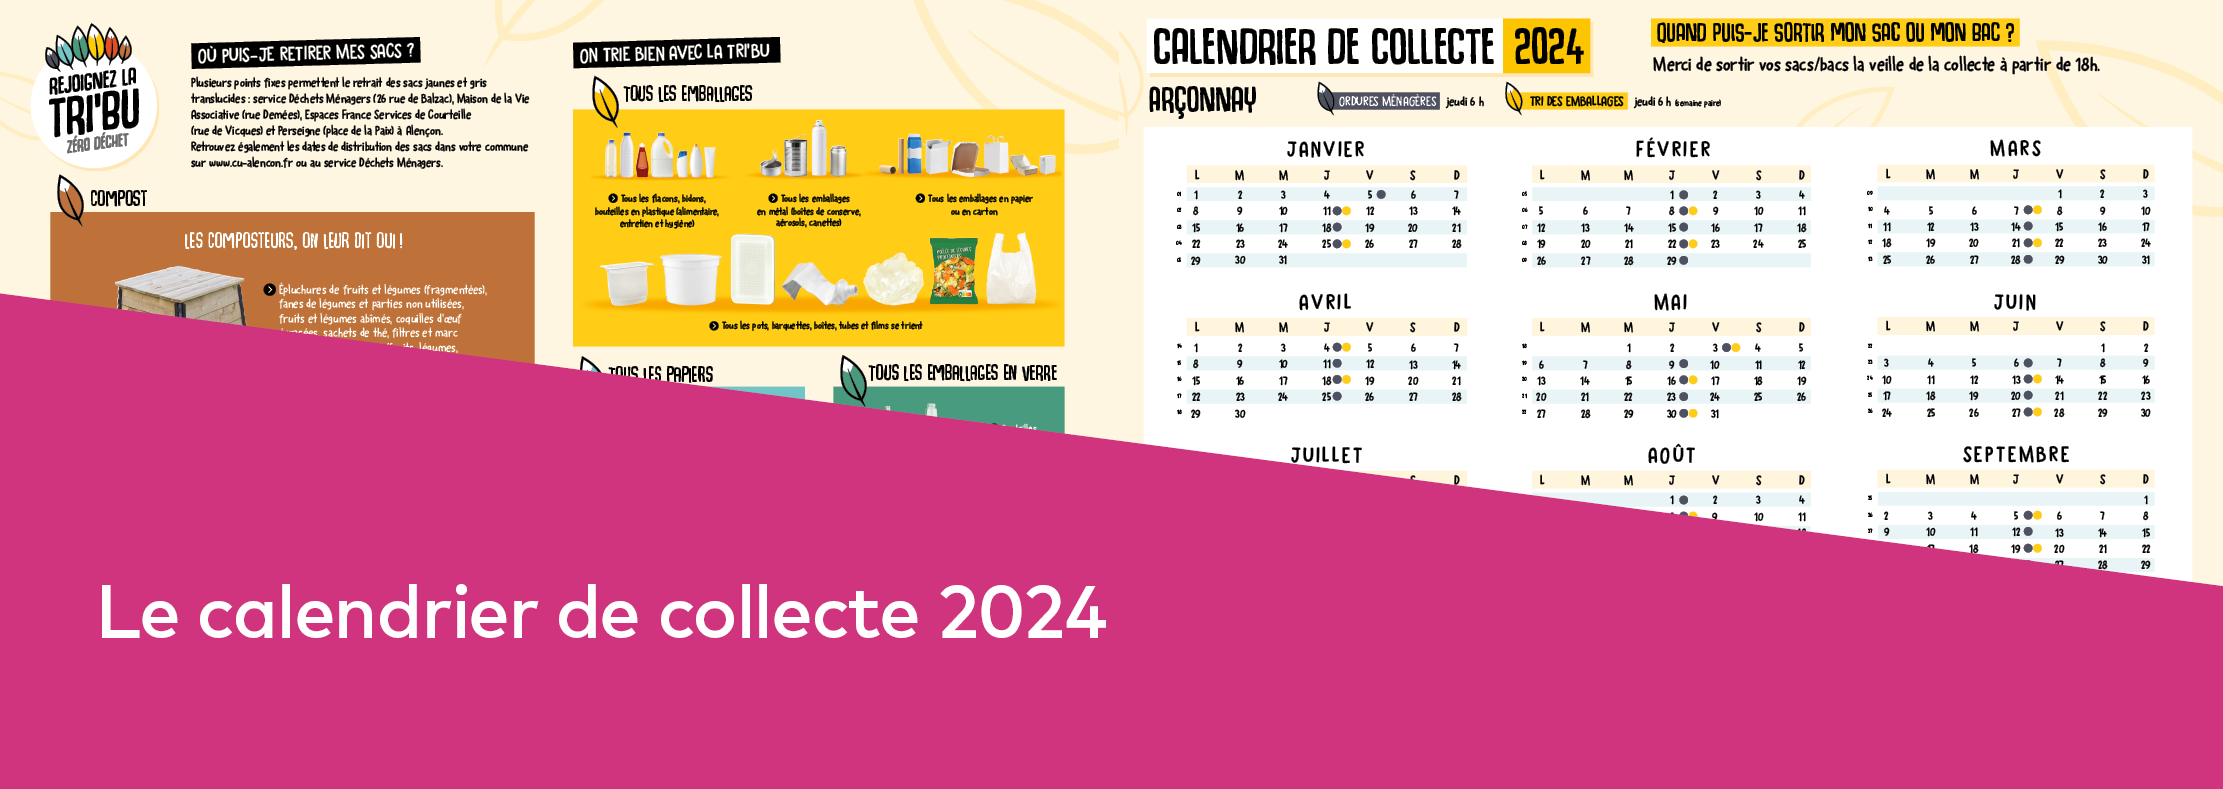 Bandeau illustrant de calendrier de collecte 2024